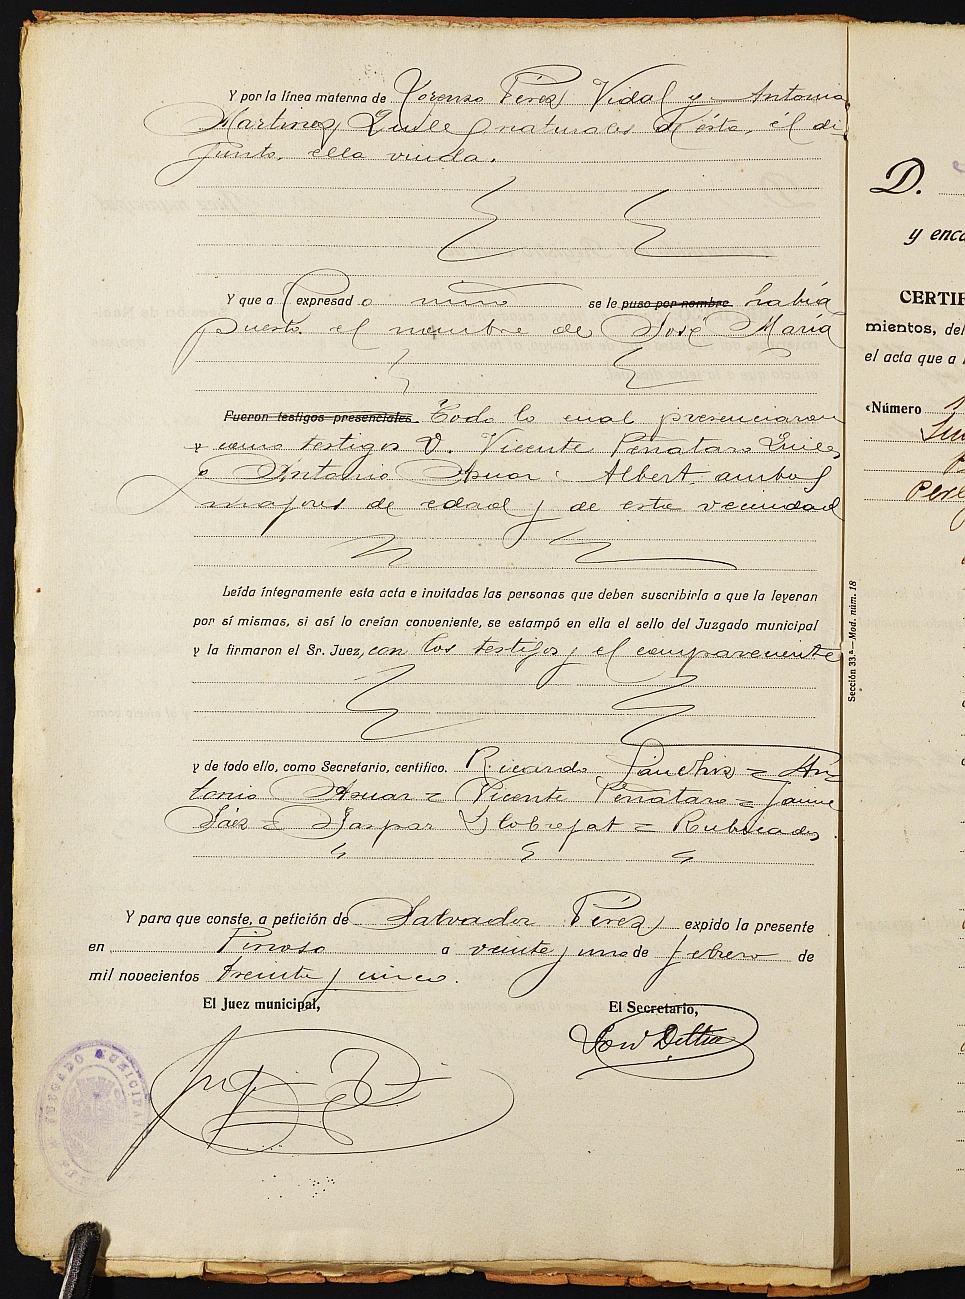 Declaración de herederos 11/1935 del Juzgado de Primera Instancia e Instrucción Nº 1 de Yecla, por defunción de Bartolomé Muñoz Ibáñez.